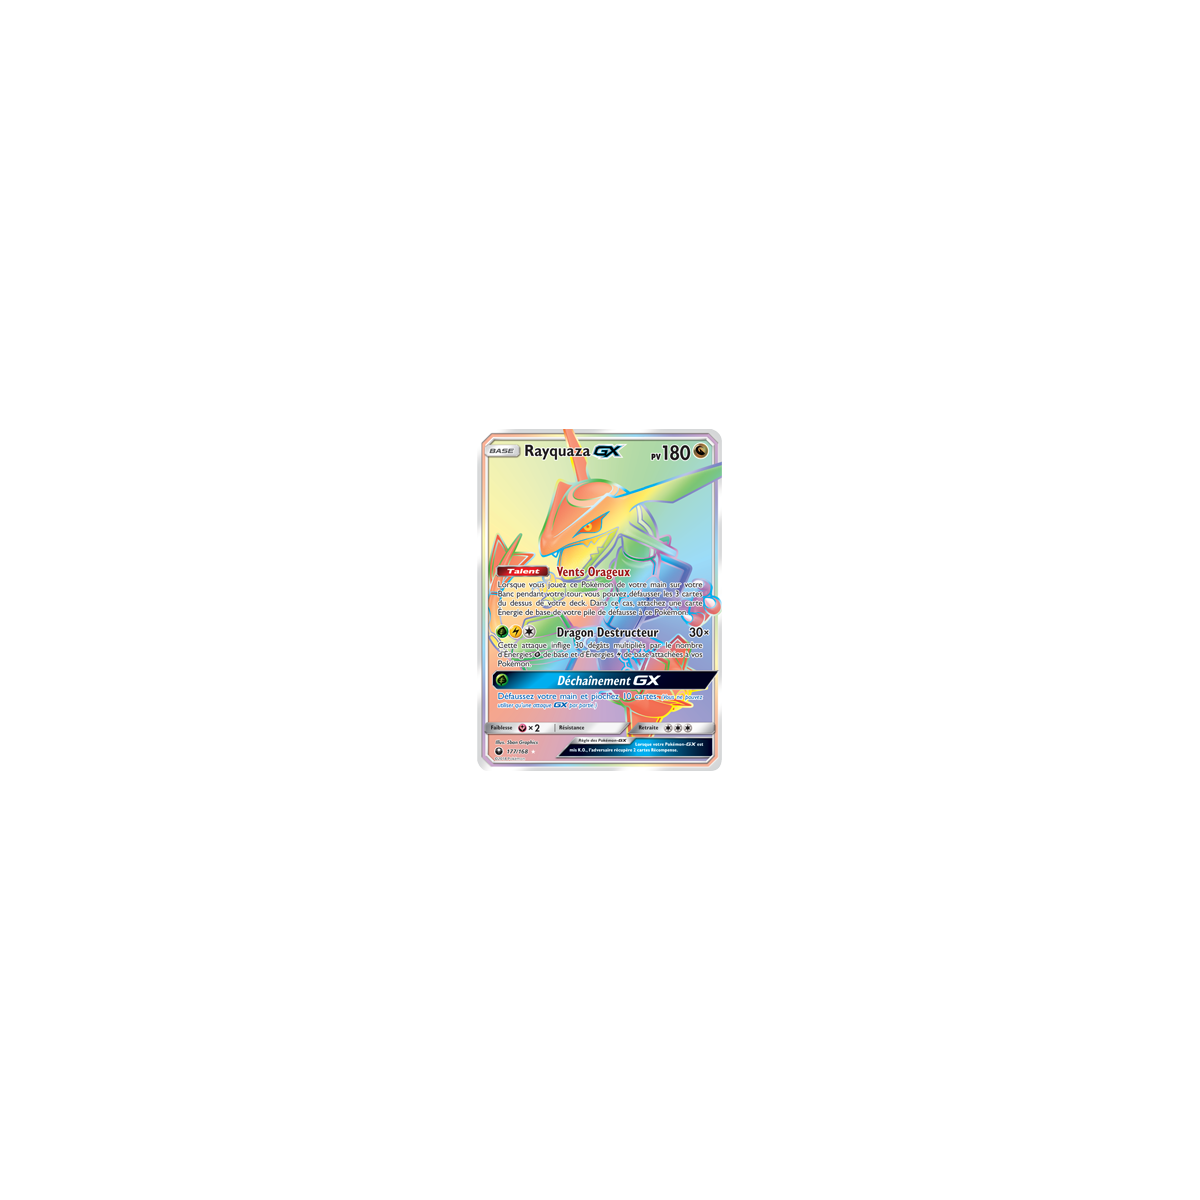 Découvrez Rayquaza, carte Arc-en-ciel rare de la série Tempête Céleste